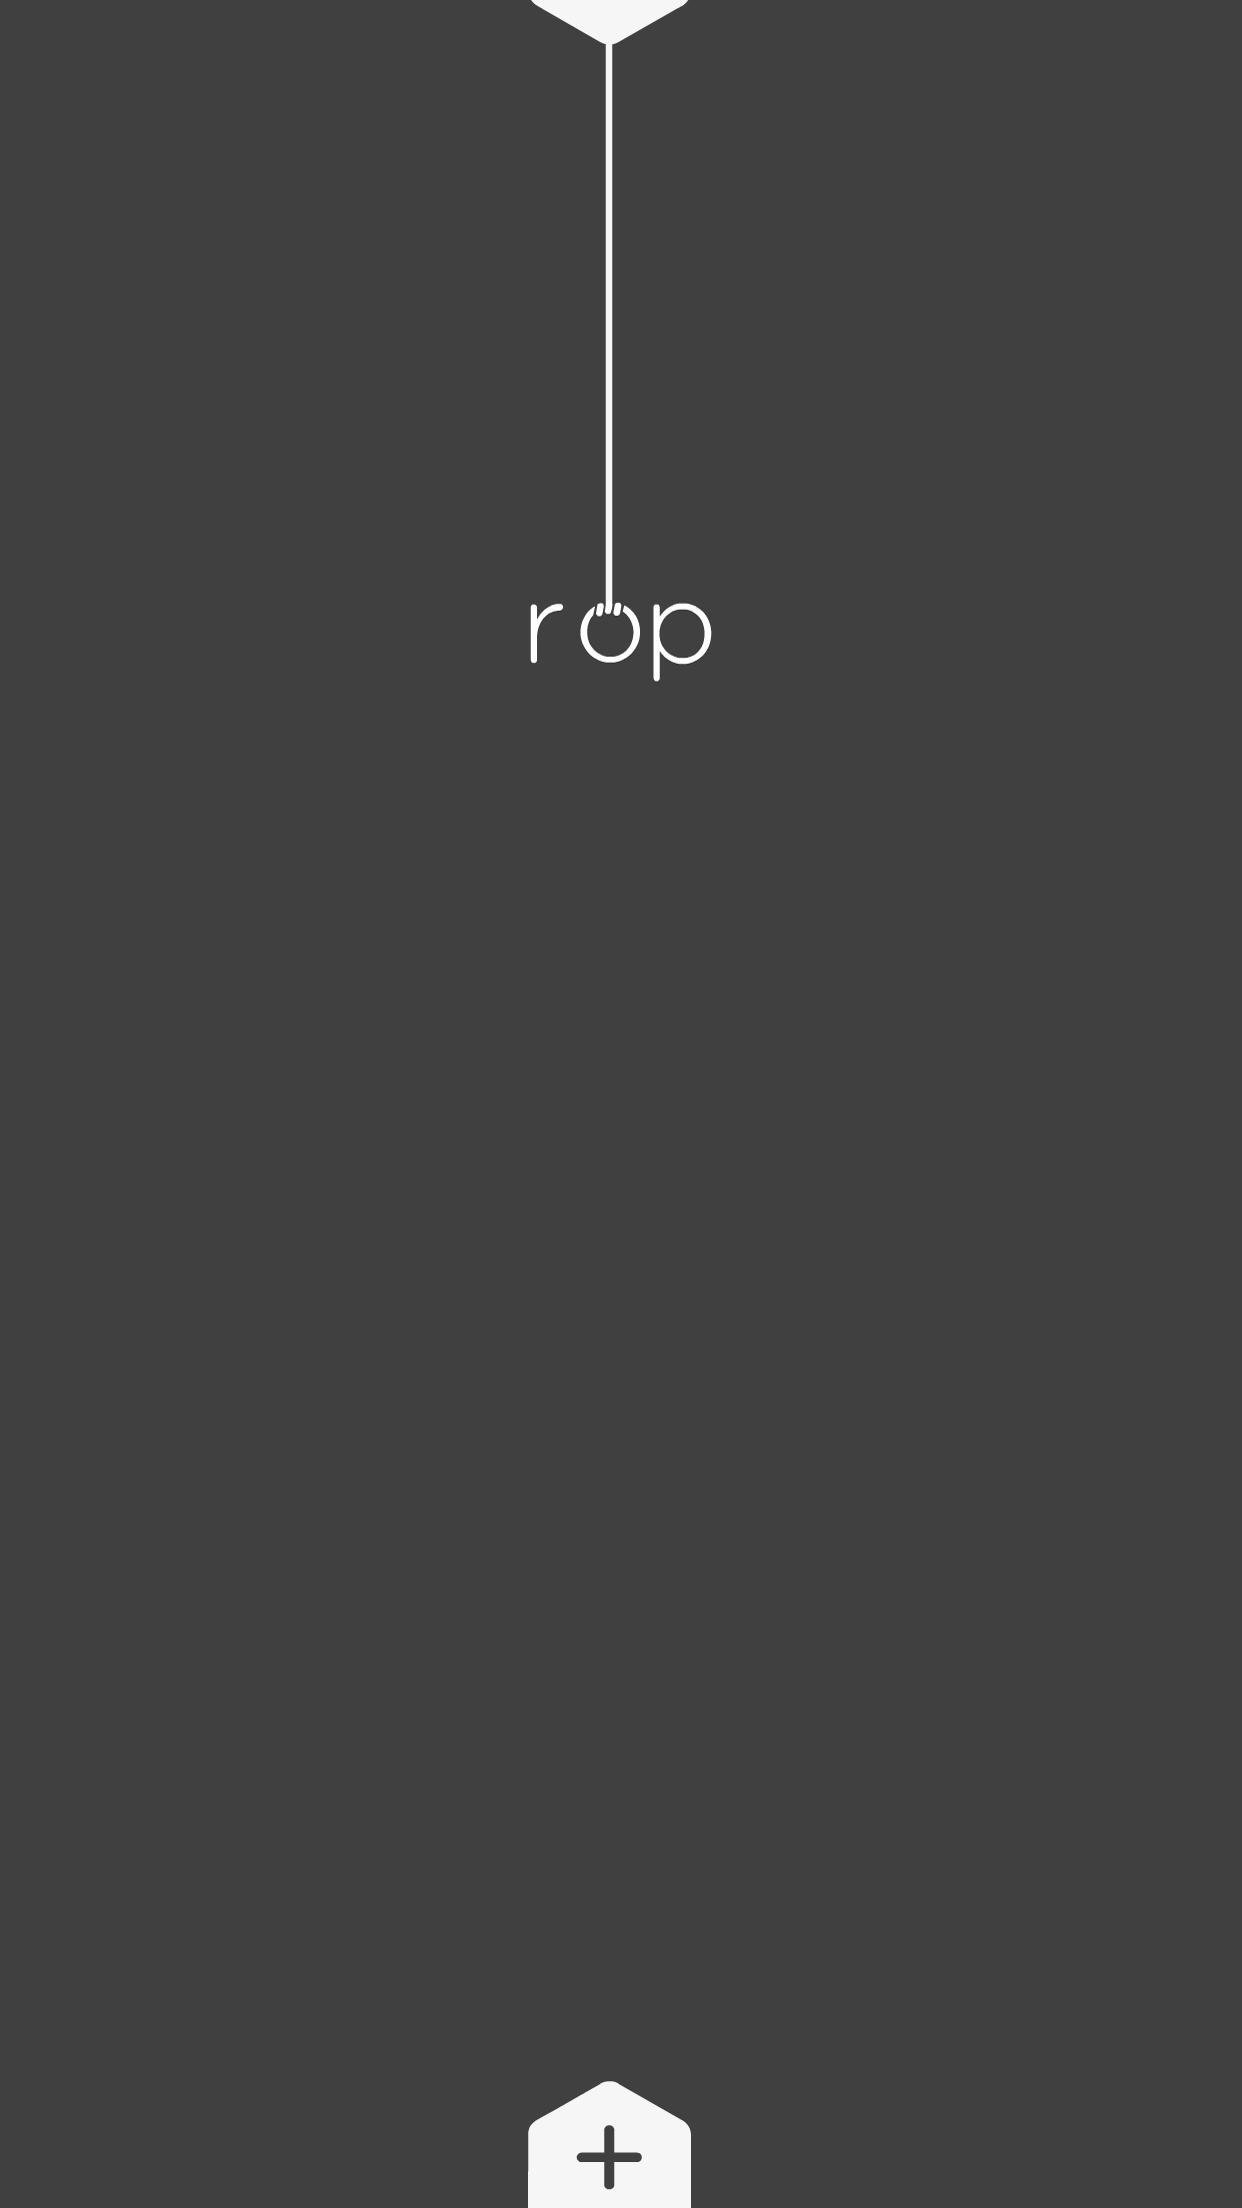 Screenshot 1 of Ropp 2.0